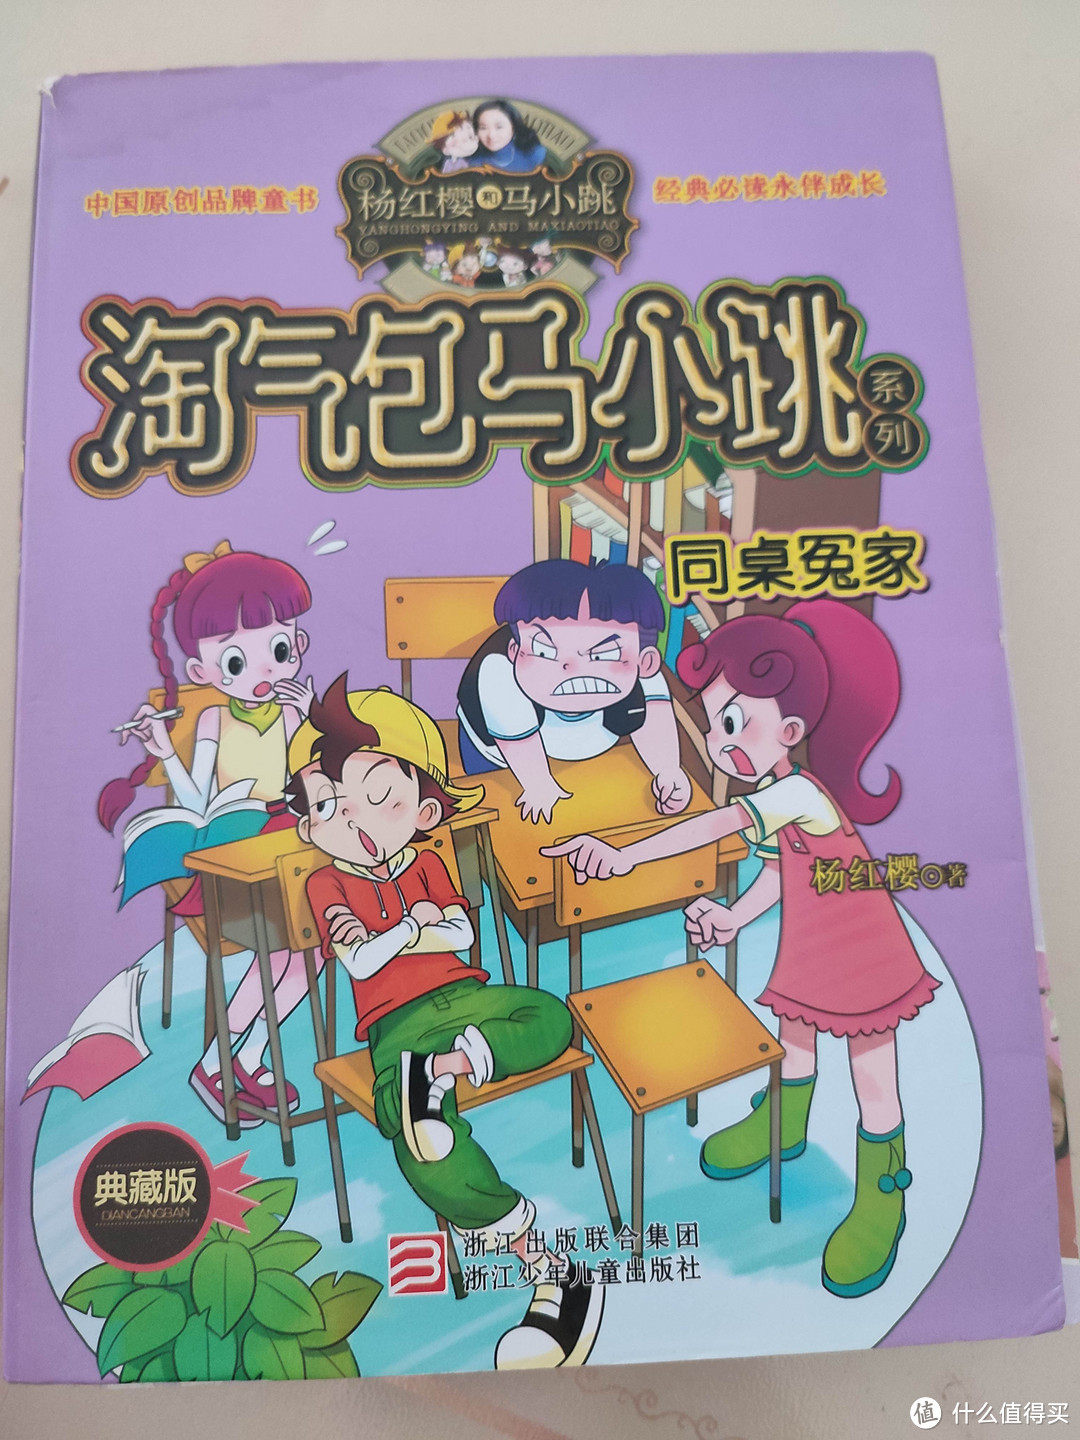 给大家推荐一套好书《淘气包马小跳》，中国孩子的贴心读本